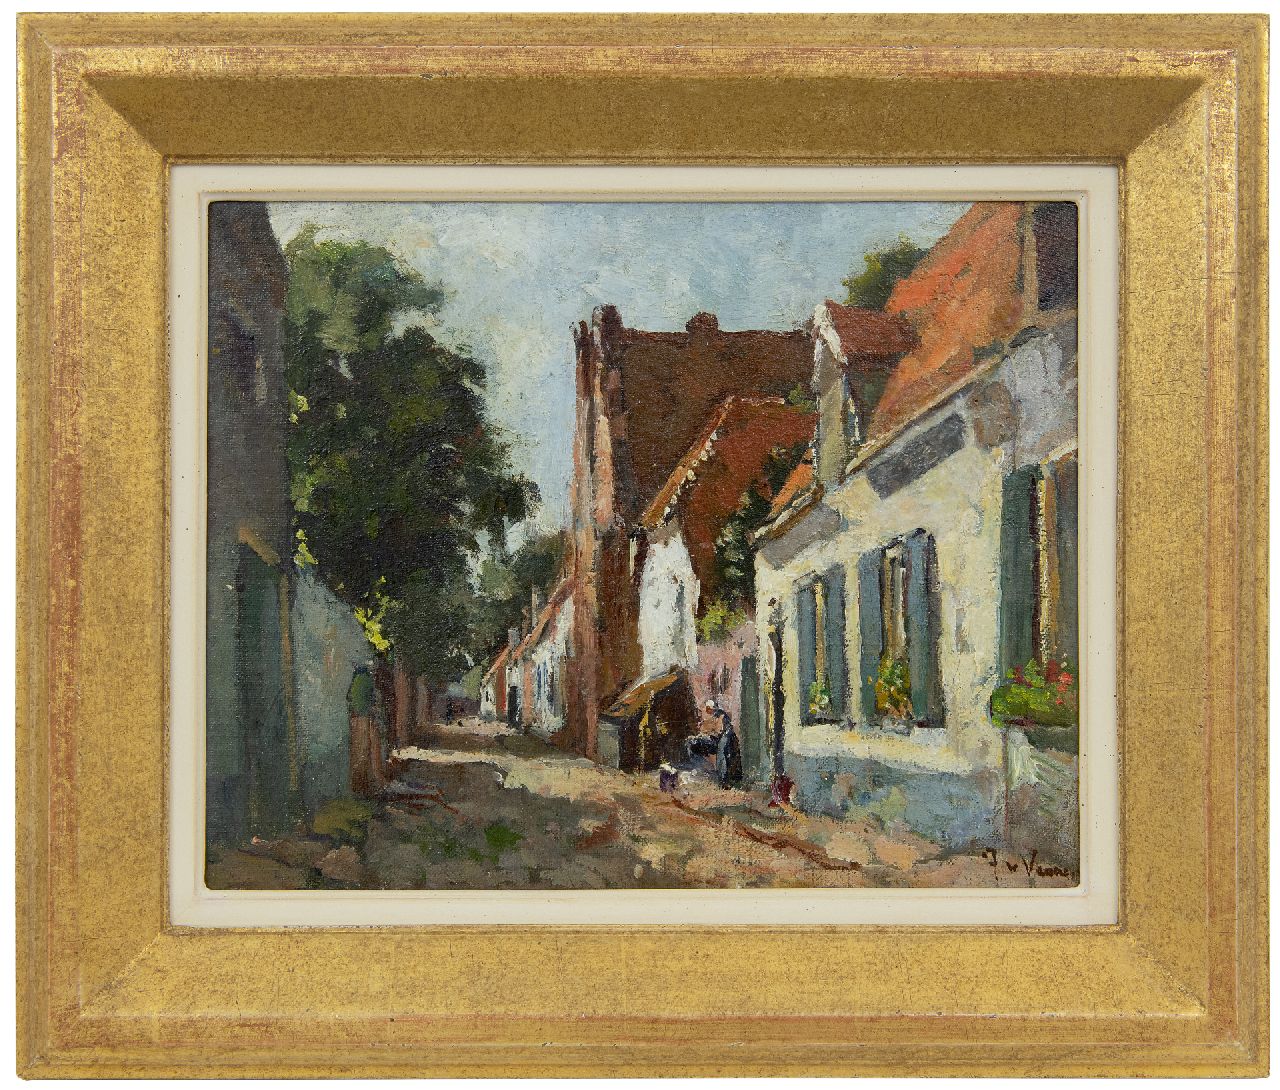 Vuuren J. van | Jan van Vuuren | Schilderijen te koop aangeboden | Straatje in Elburg, olieverf op doek 24,0 x 30,1 cm, gesigneerd rechtsonder